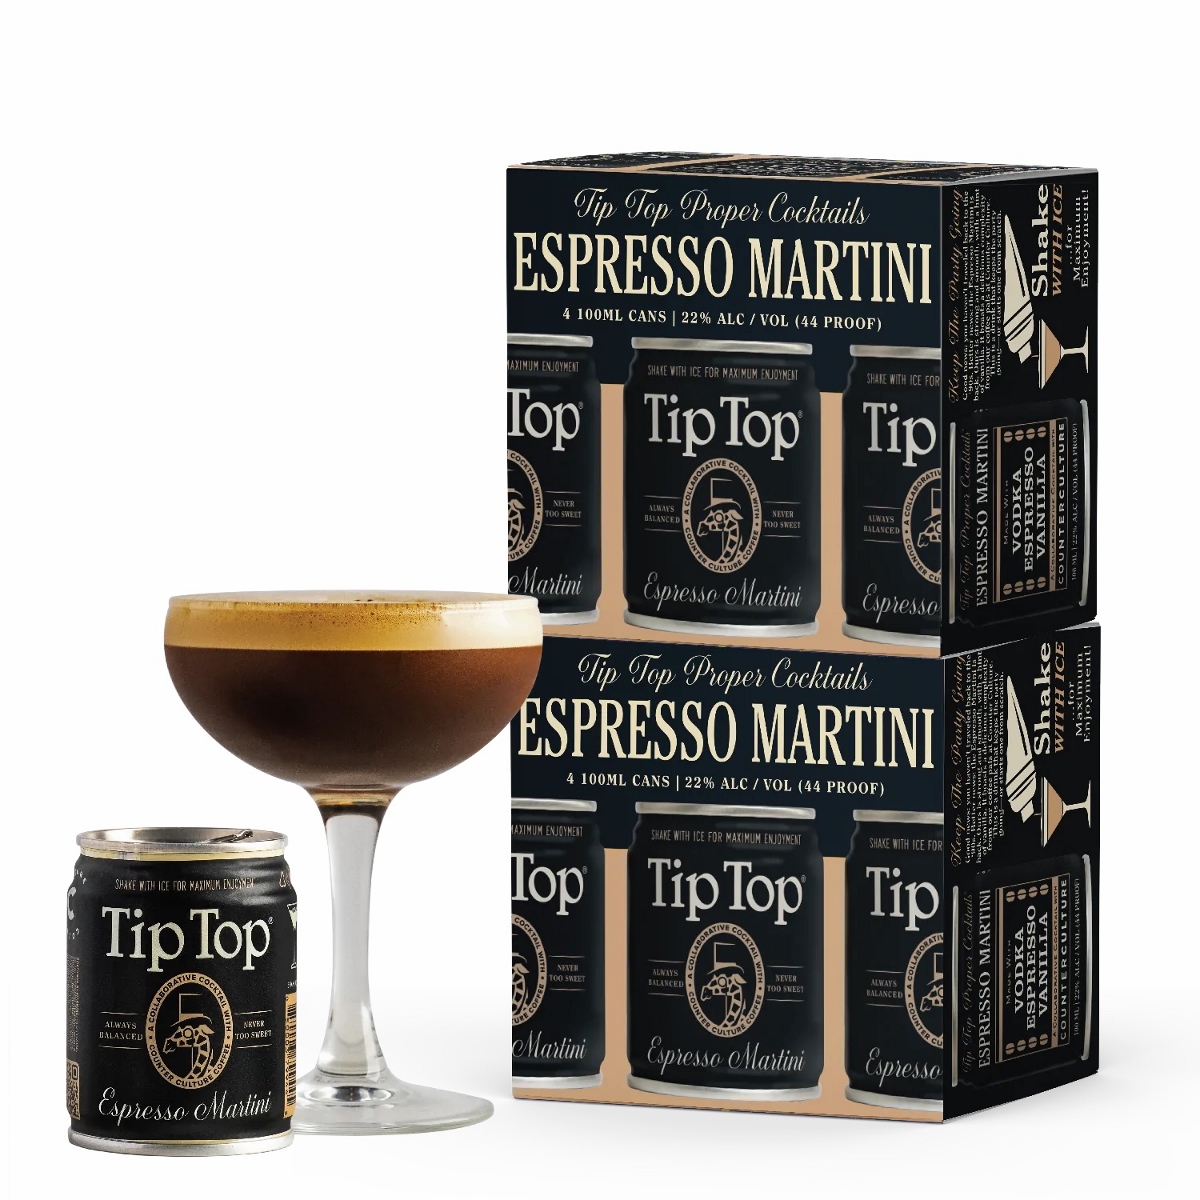 Espresso Martini, Counter Culture Coffee